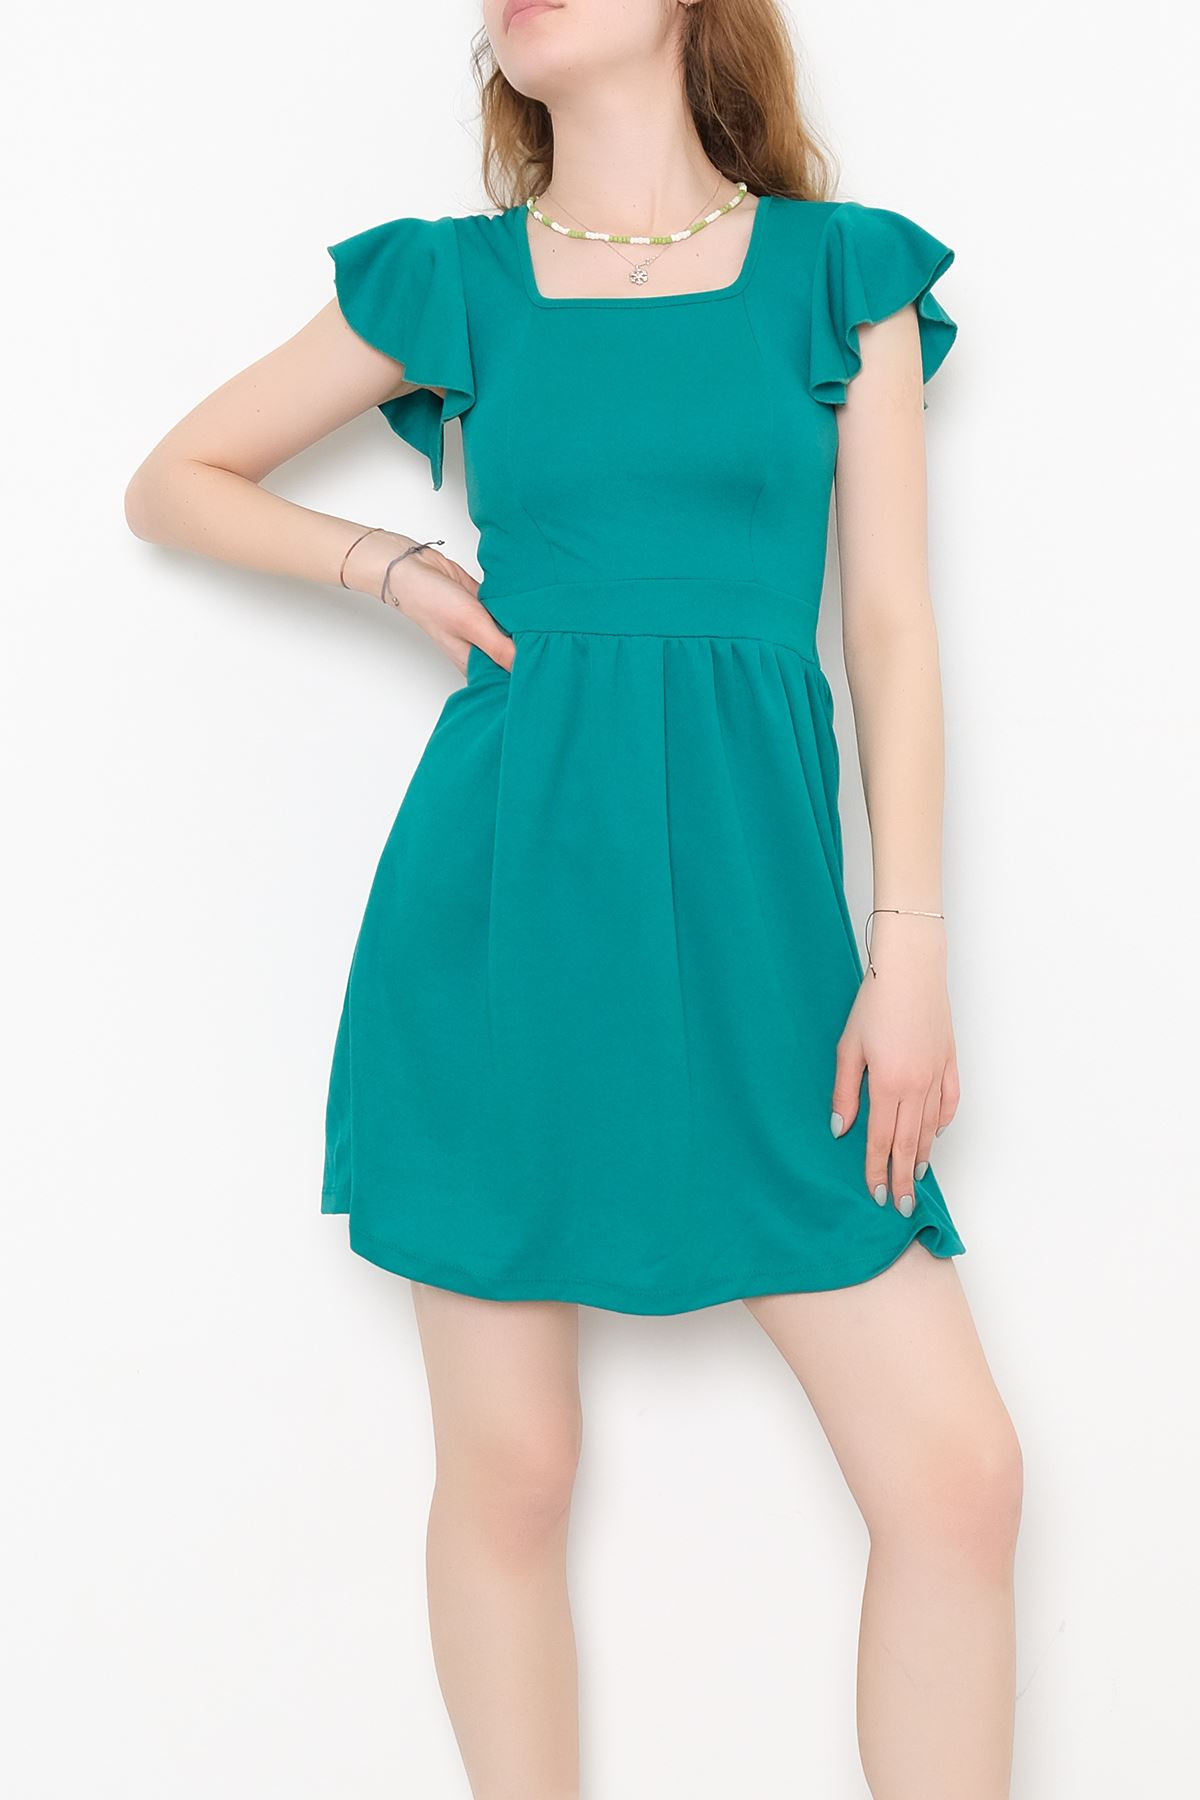 Kol Fırfırlı Elbise Yeşil - 10684.631.